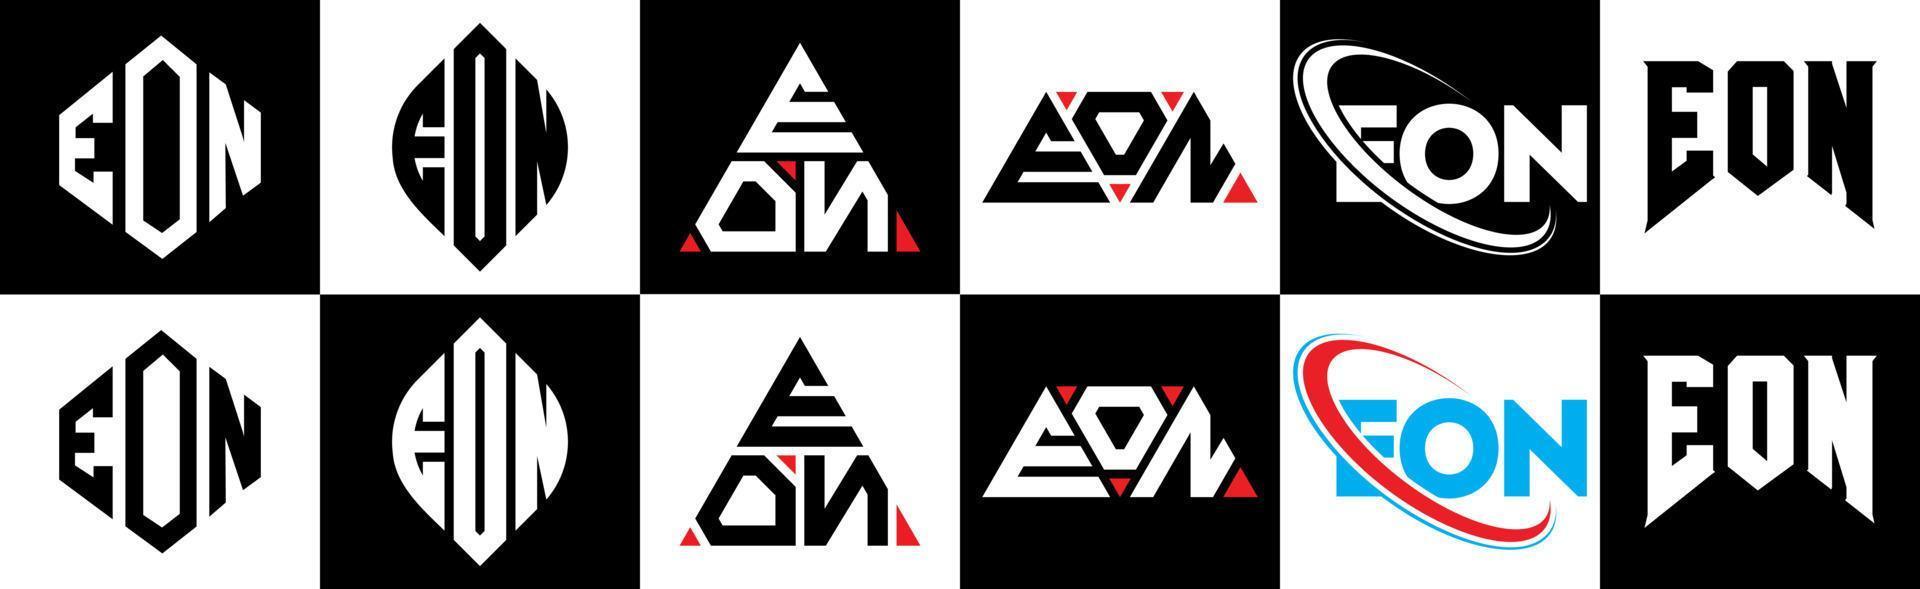 création de logo de lettre eon en six styles. polygone eon, cercle, triangle, hexagone, style plat et simple avec logo de lettre de variation de couleur noir et blanc dans un plan de travail. logo minimaliste et classique eon vecteur